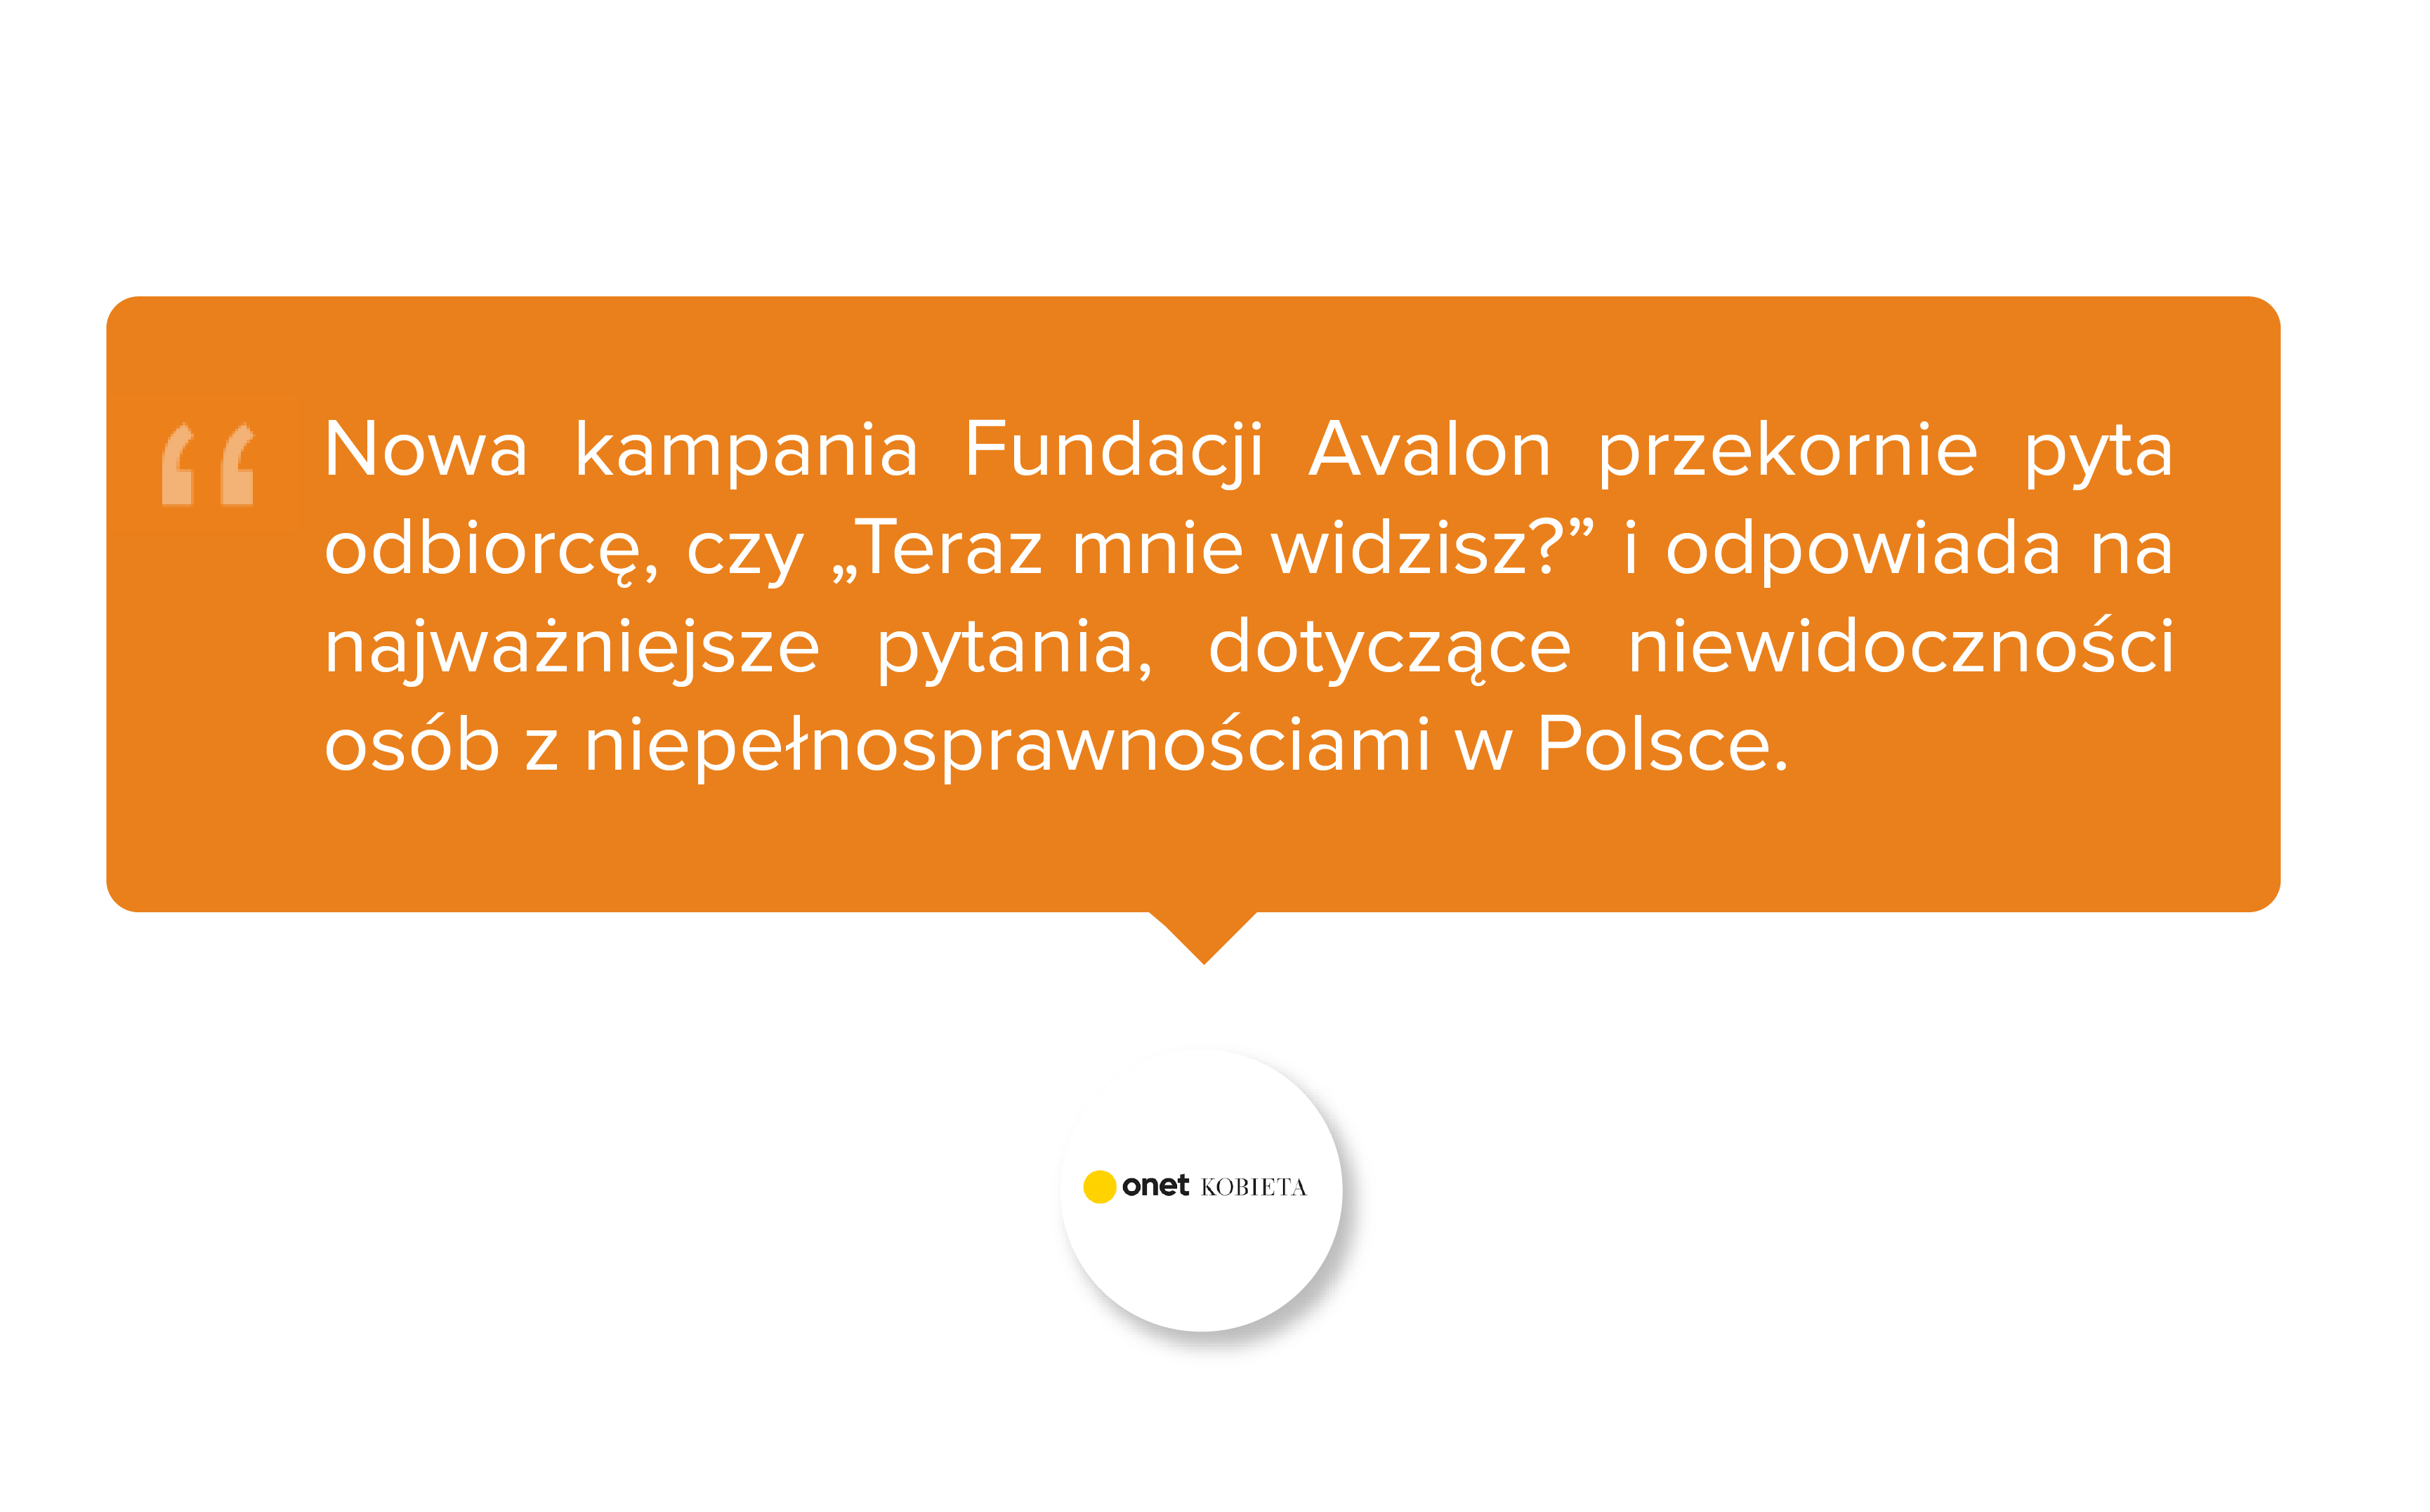 Onet Kobieta. Nowa kampania Fundacji Avalon przekornie pyta odbiorcę, czy „Teraz mnie widzisz?” i odpowiada na najważniejsze pytania, dotyczące niewidoczności osób z niepełnosprawnościami w Polsce.